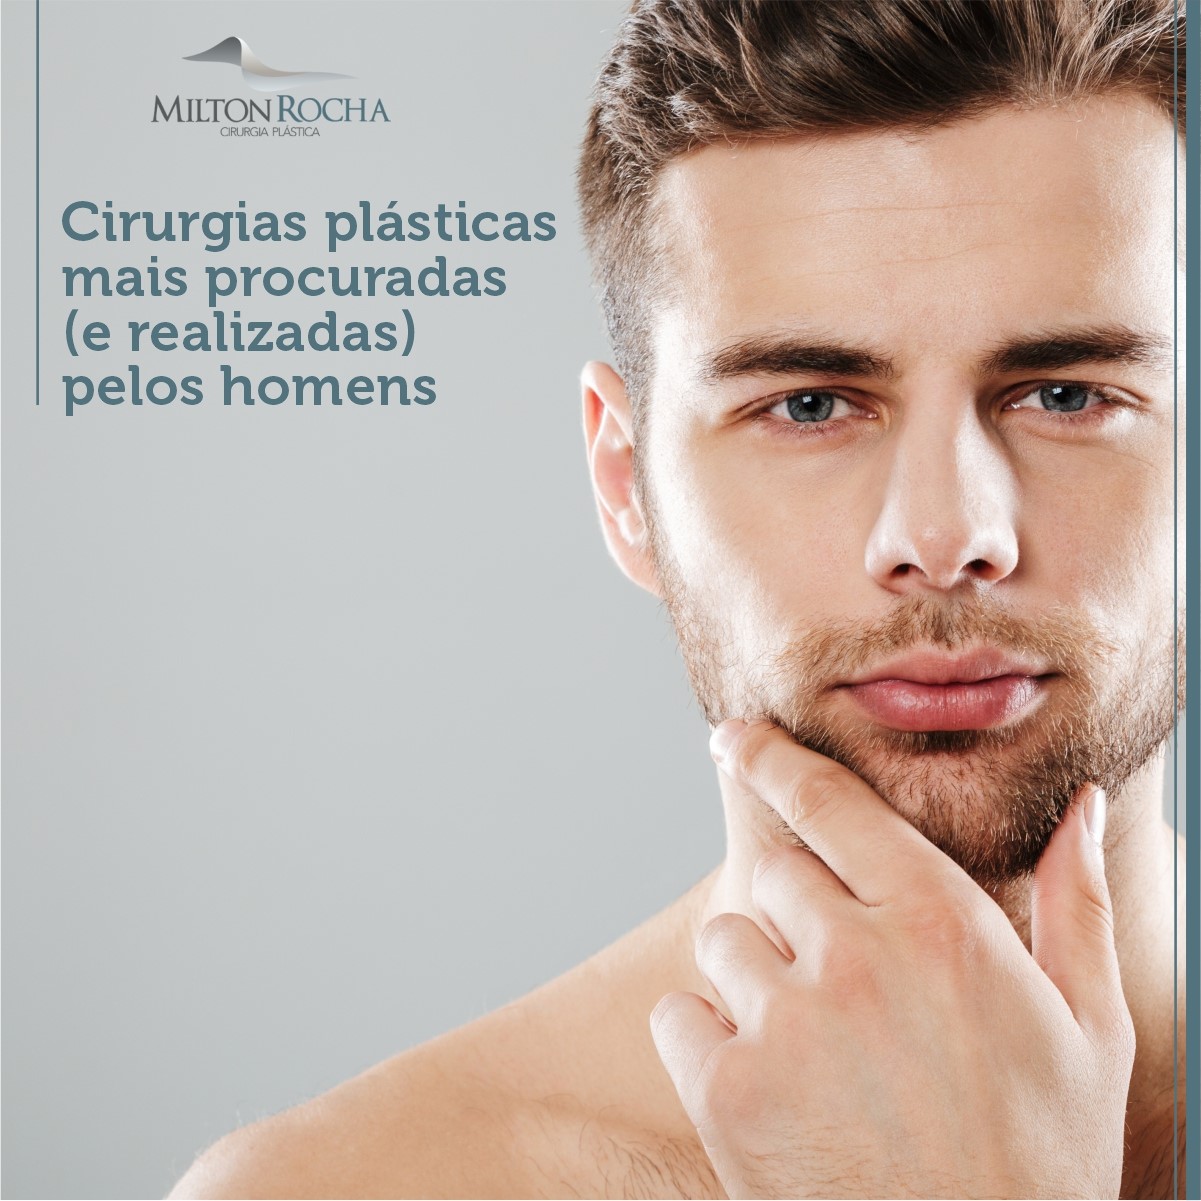 You are currently viewing Cirurgia Plástica Recife – Cirurgias Plásticas mais procuradas (e realizadas) pelos homens